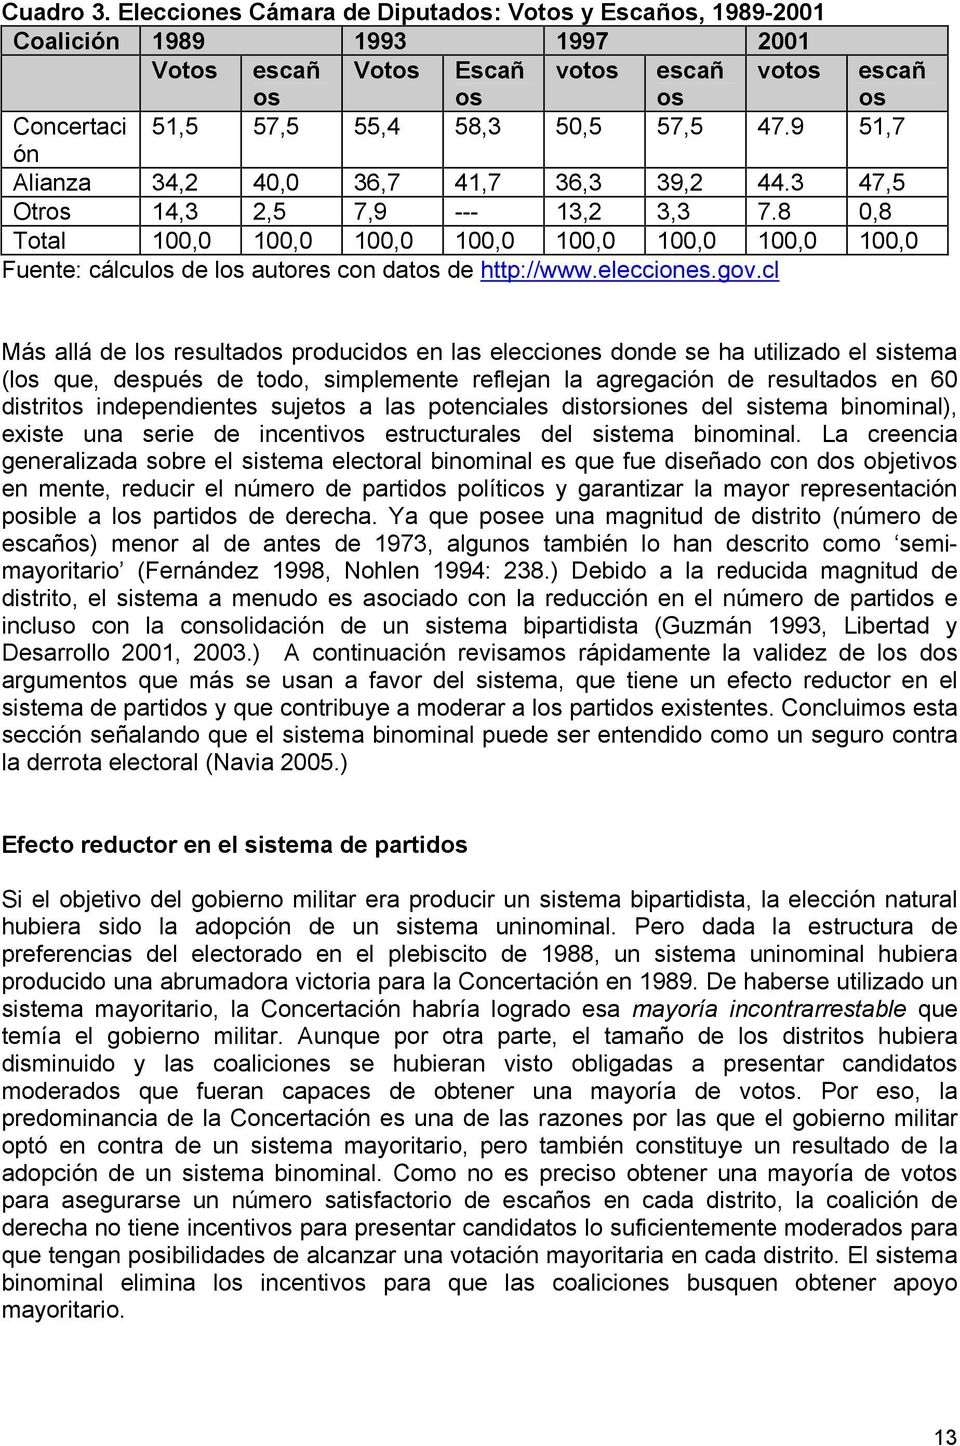 8 0,8 Total 100,0 100,0 100,0 100,0 100,0 100,0 100,0 100,0 Fuente: cálculos de los autores con datos de http://www.elecciones.gov.